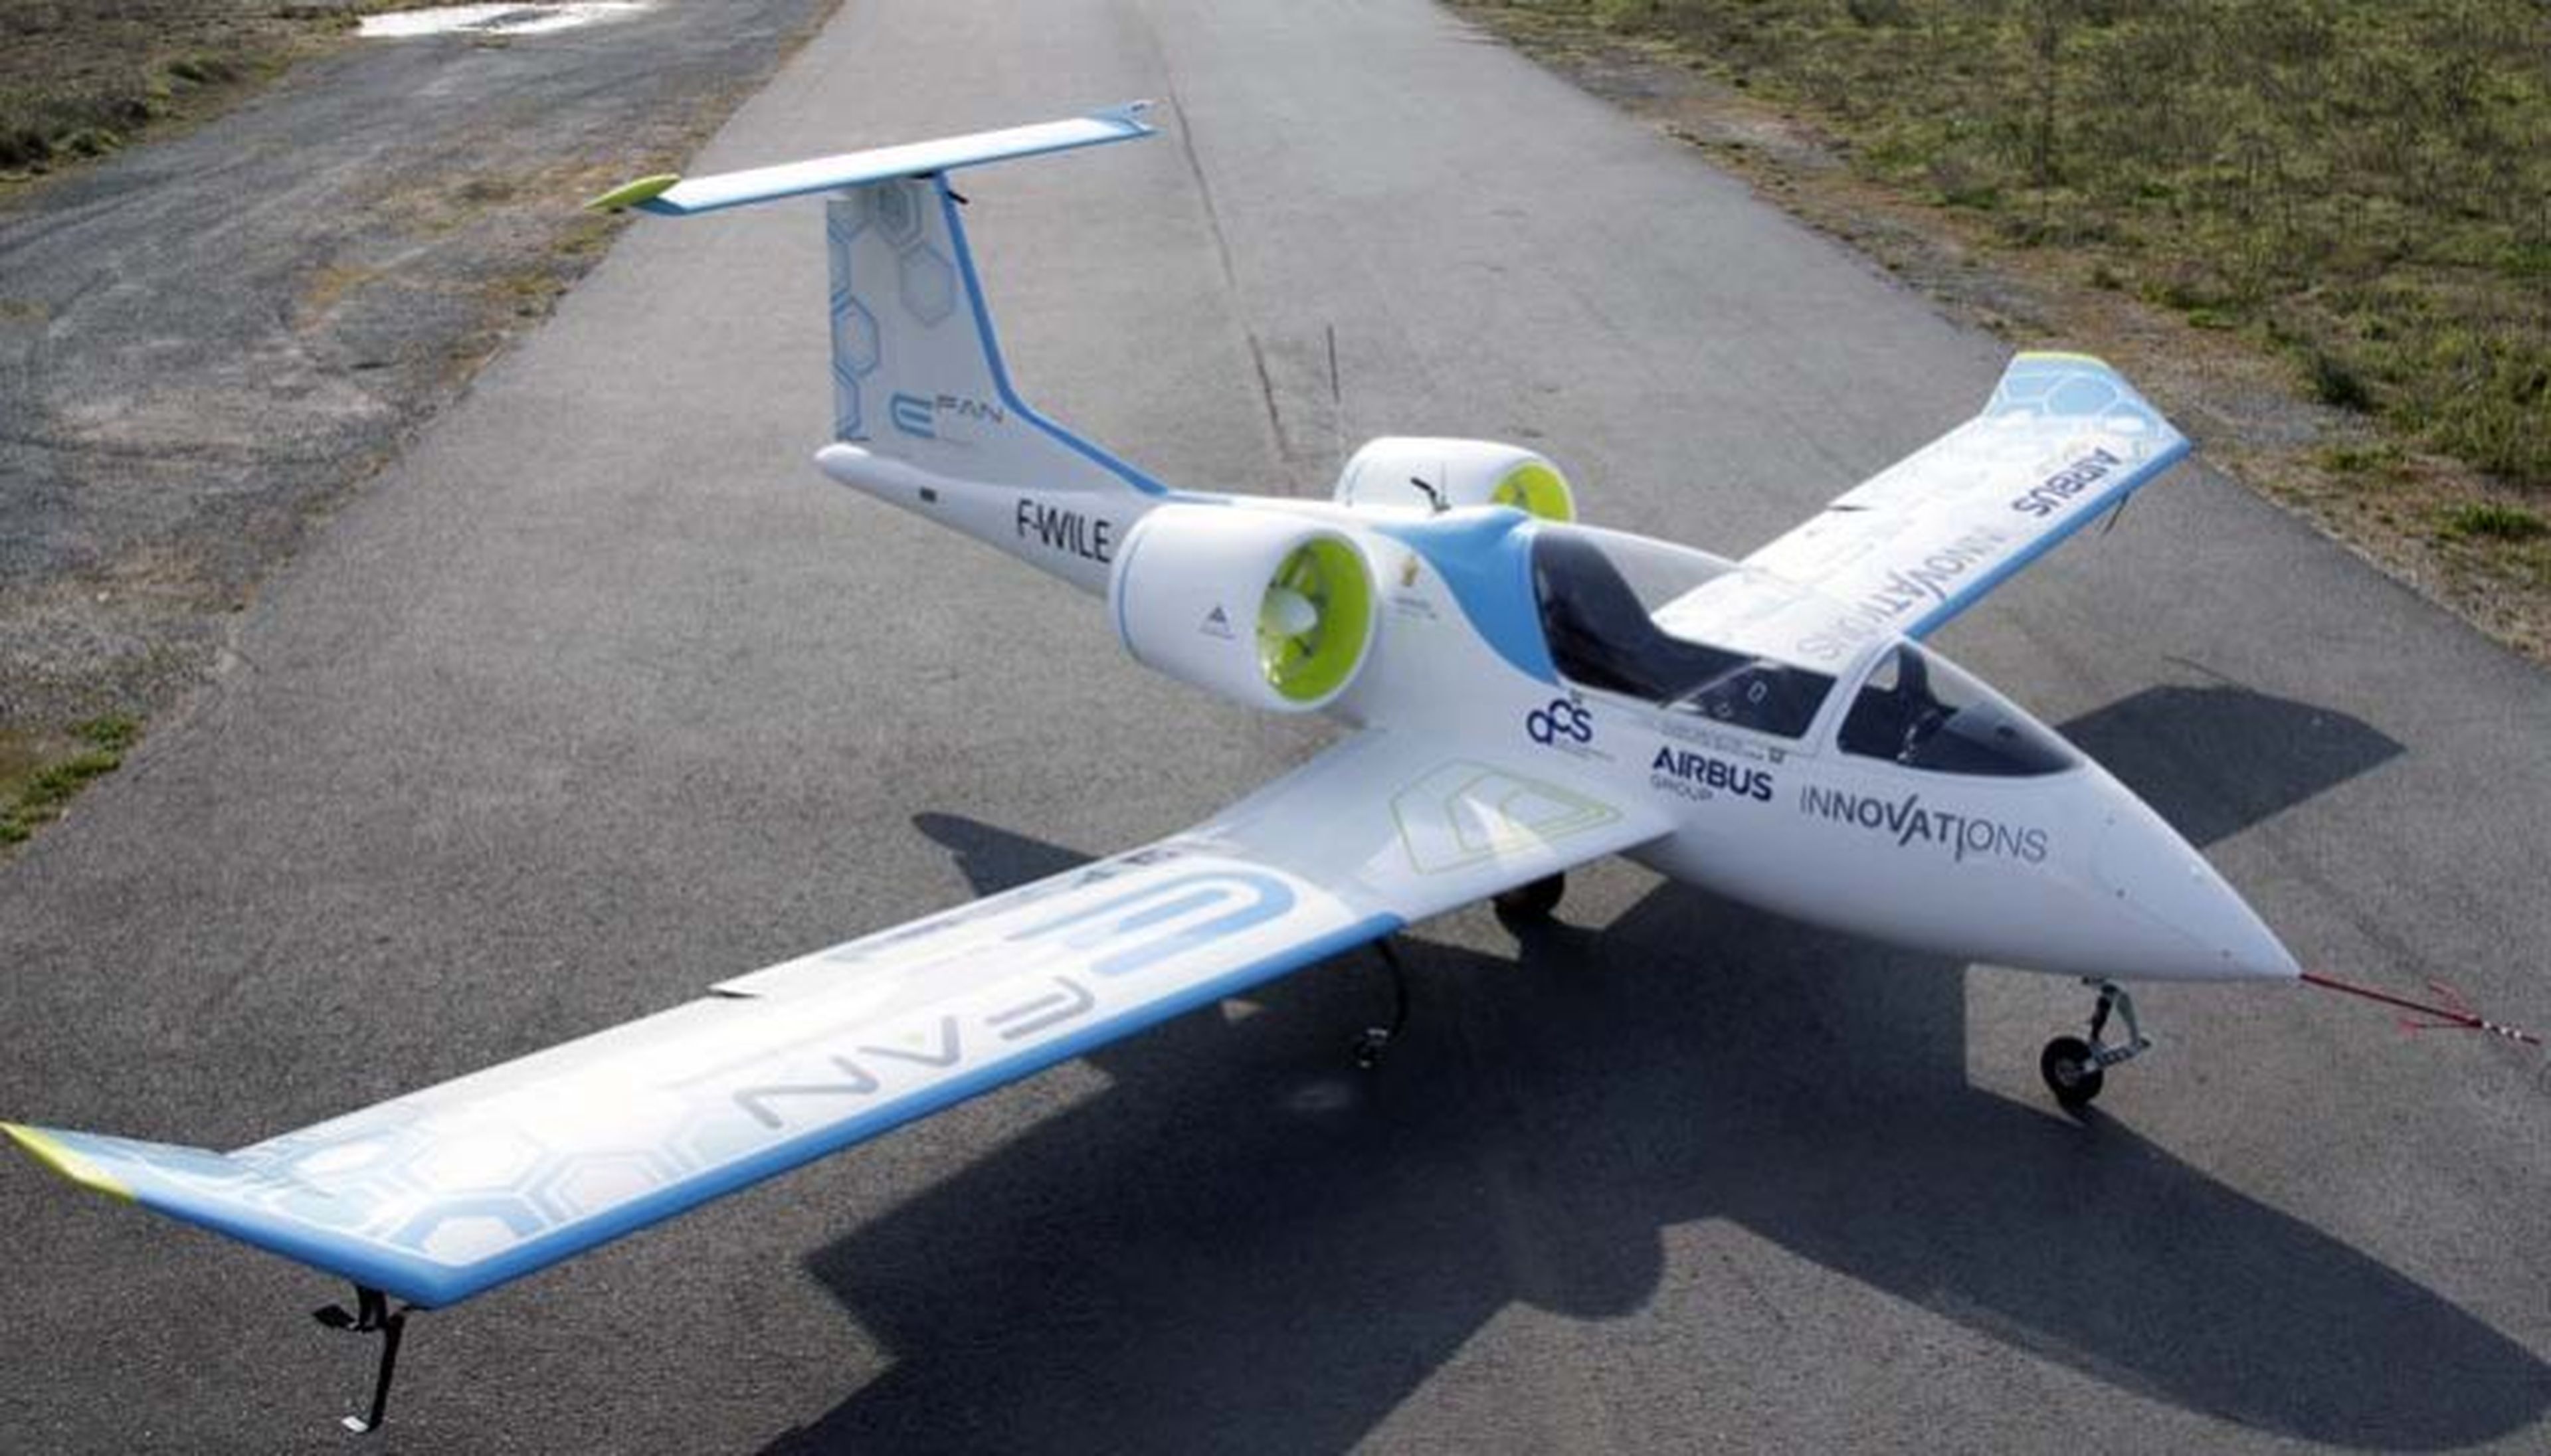 Llega el avión eléctrico que recorre 480 km sin combustible